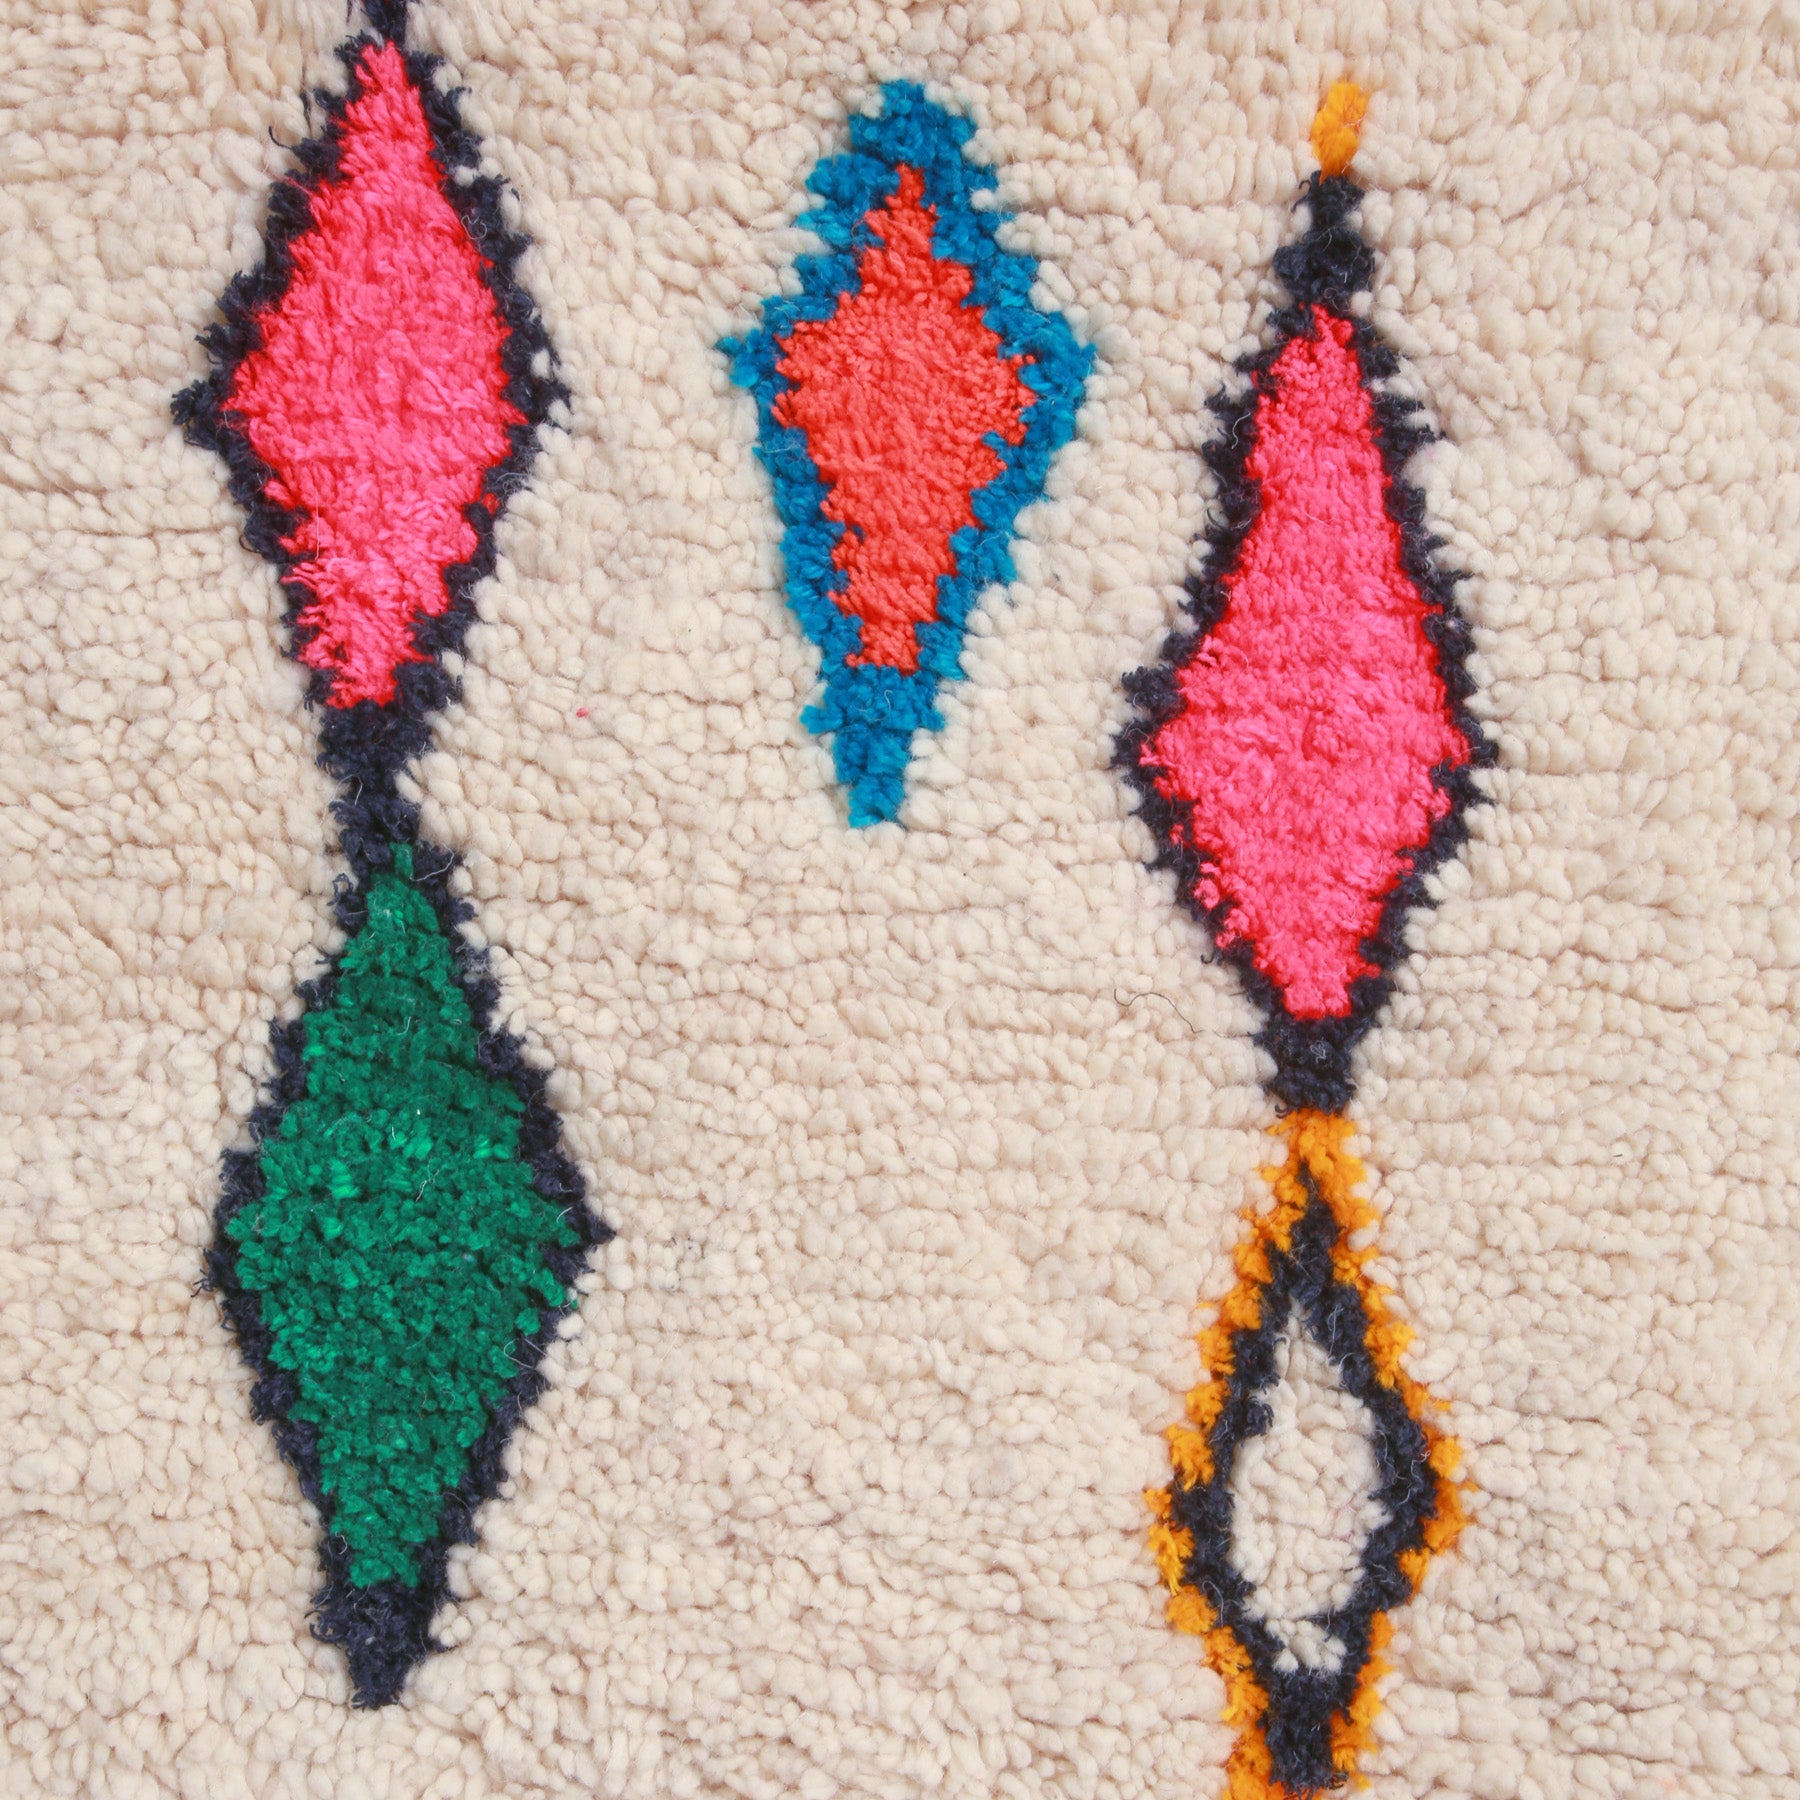 dettaglio dei simboli a forma di rombo con colori sgargianti come il rosa il verde con contorni neri blu e gialli di un tappeto marocchino azilal realizzato a mano